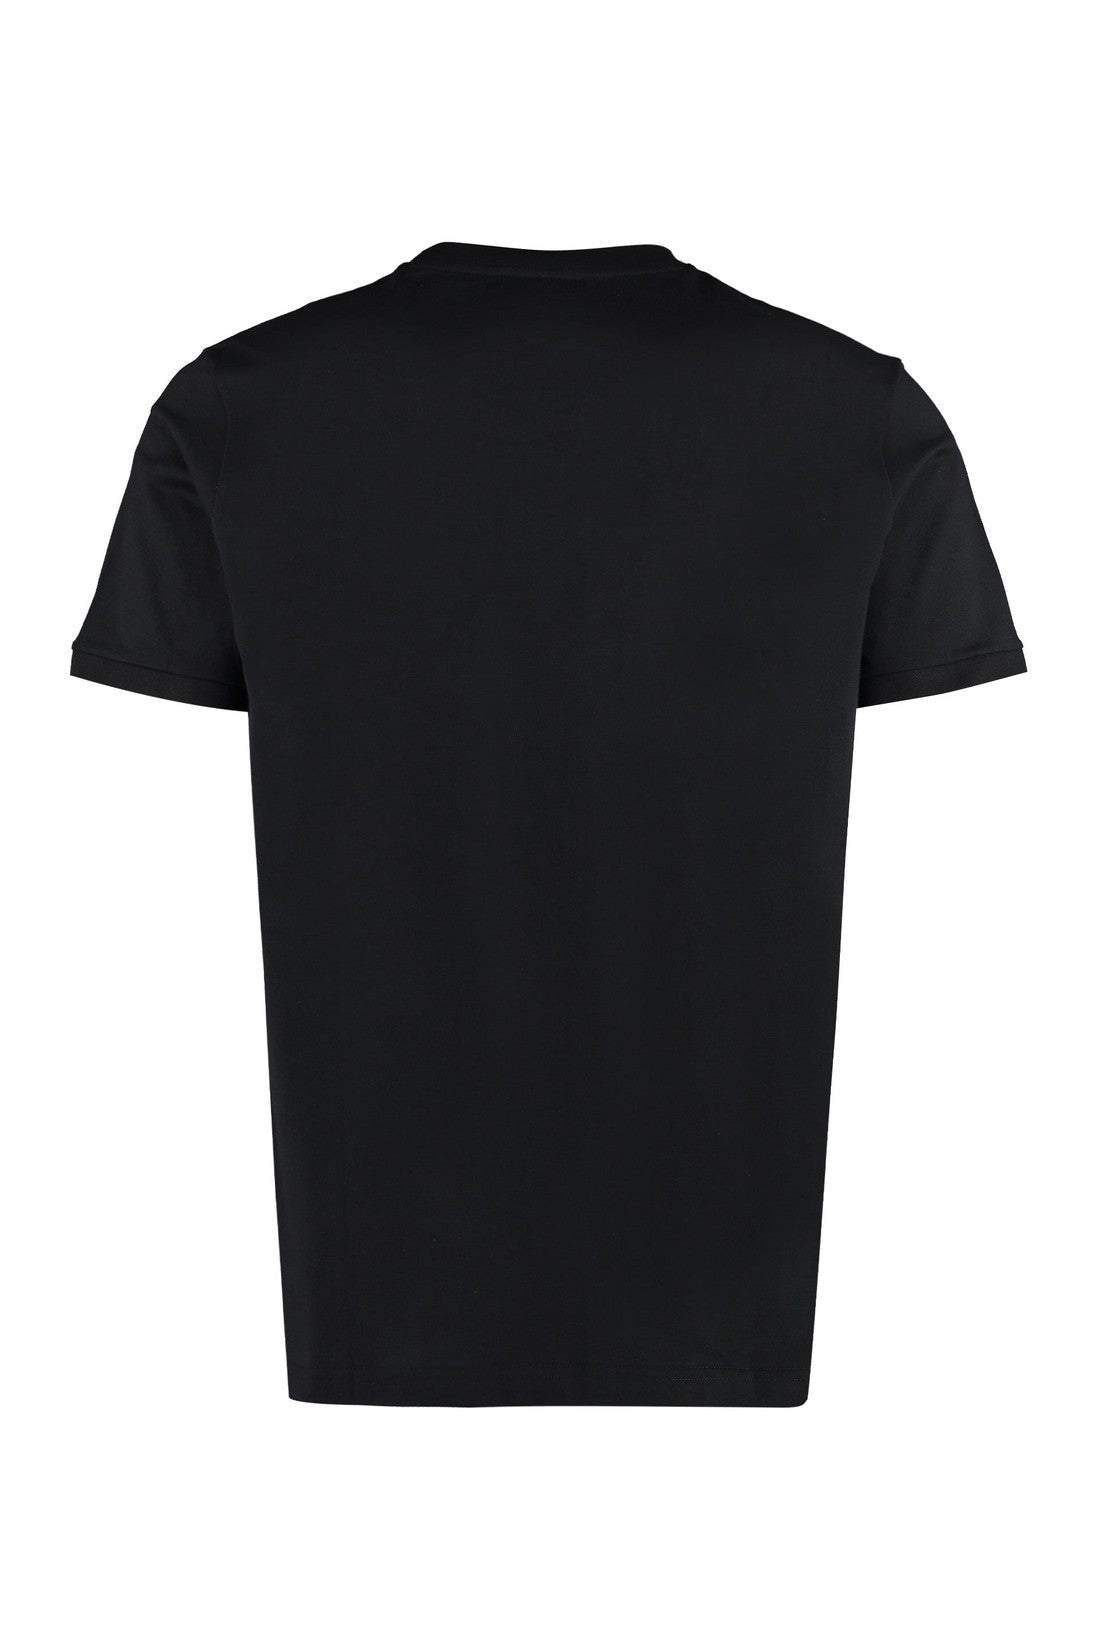 Paul&Shark-OUTLET-SALE-Logo cotton t-shirt-ARCHIVIST